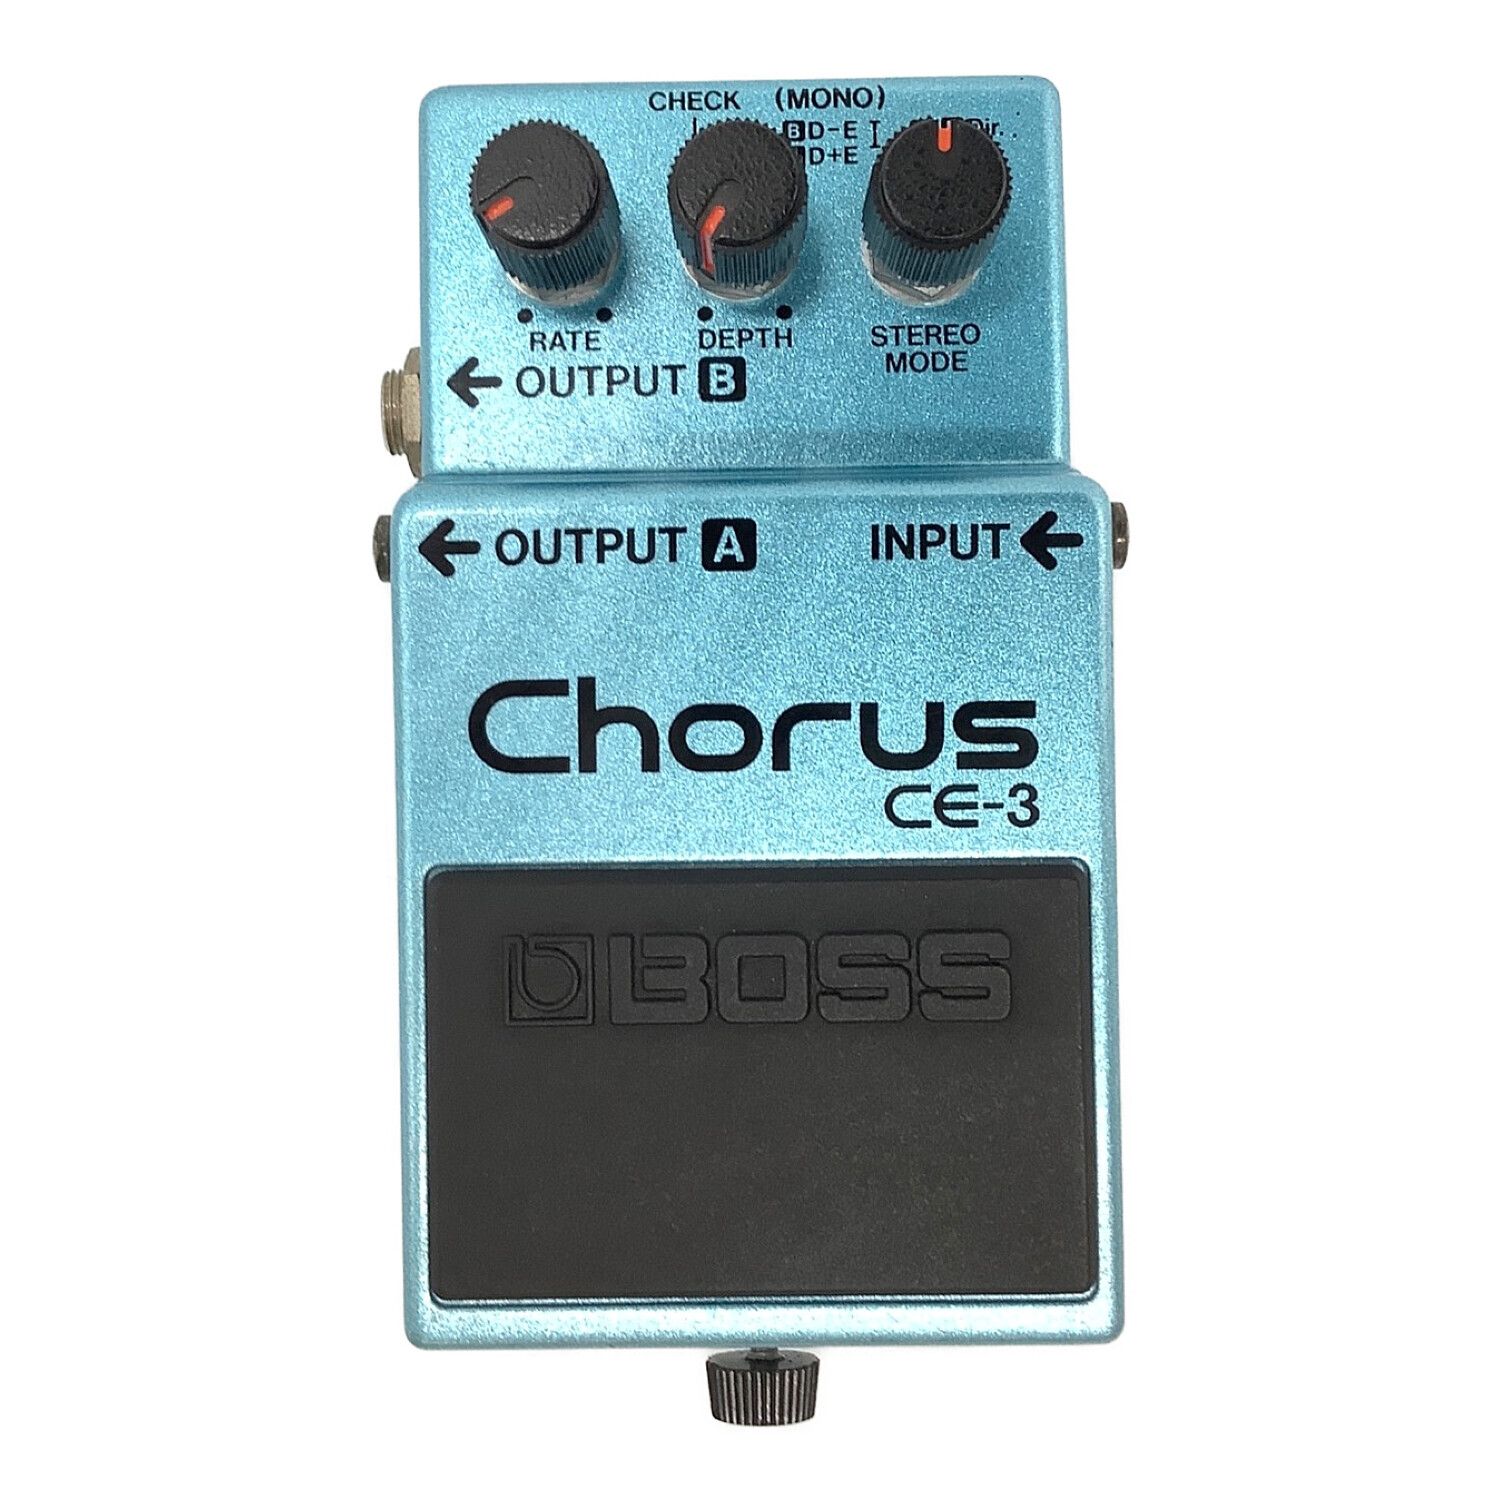 BOSS Chorus CE-3 ボス コーラス ギター エフェクター非常に気に入っておりましたが